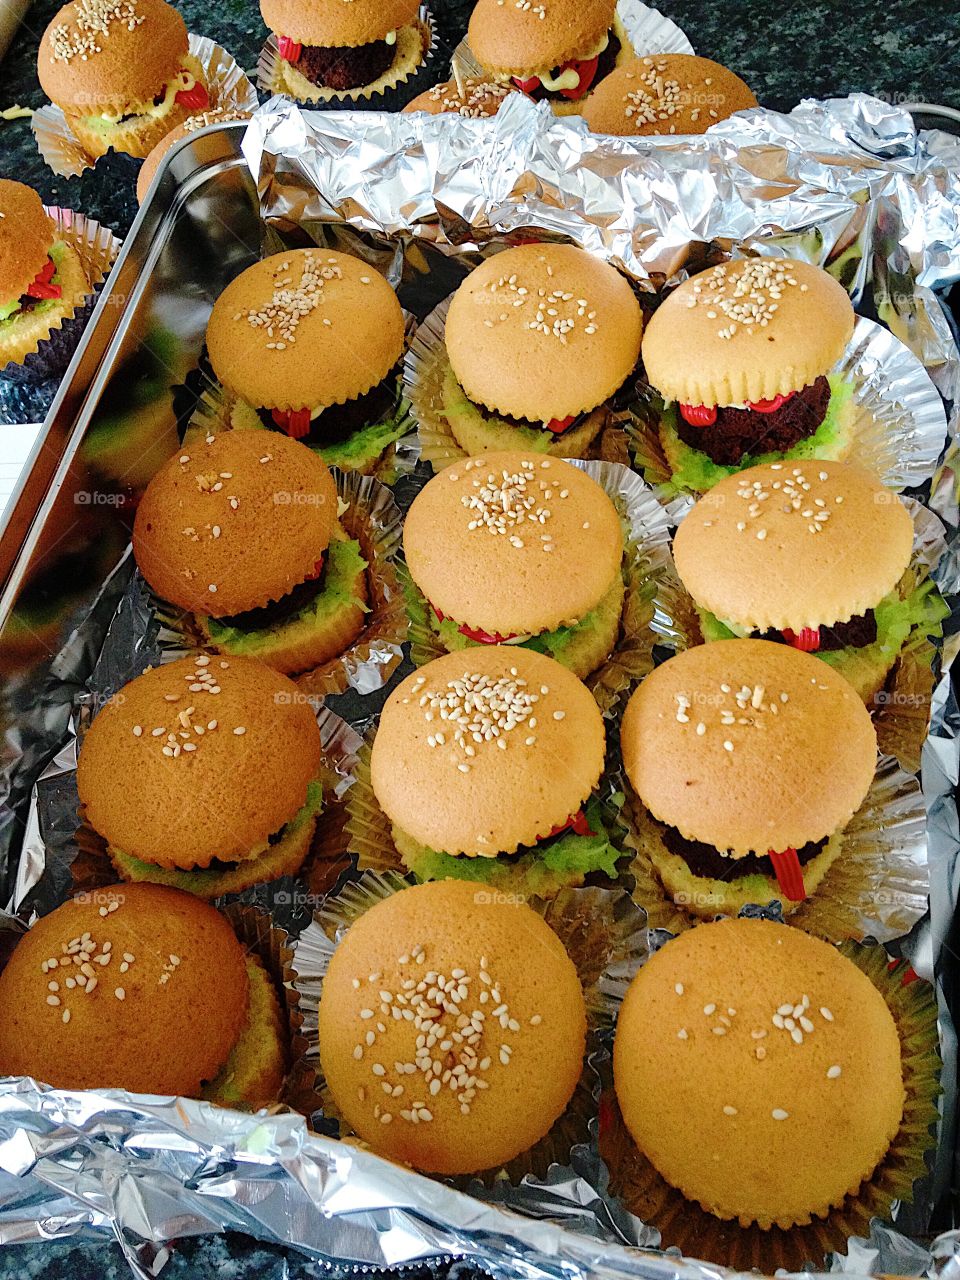 Hamburger inspired cupcakes! 